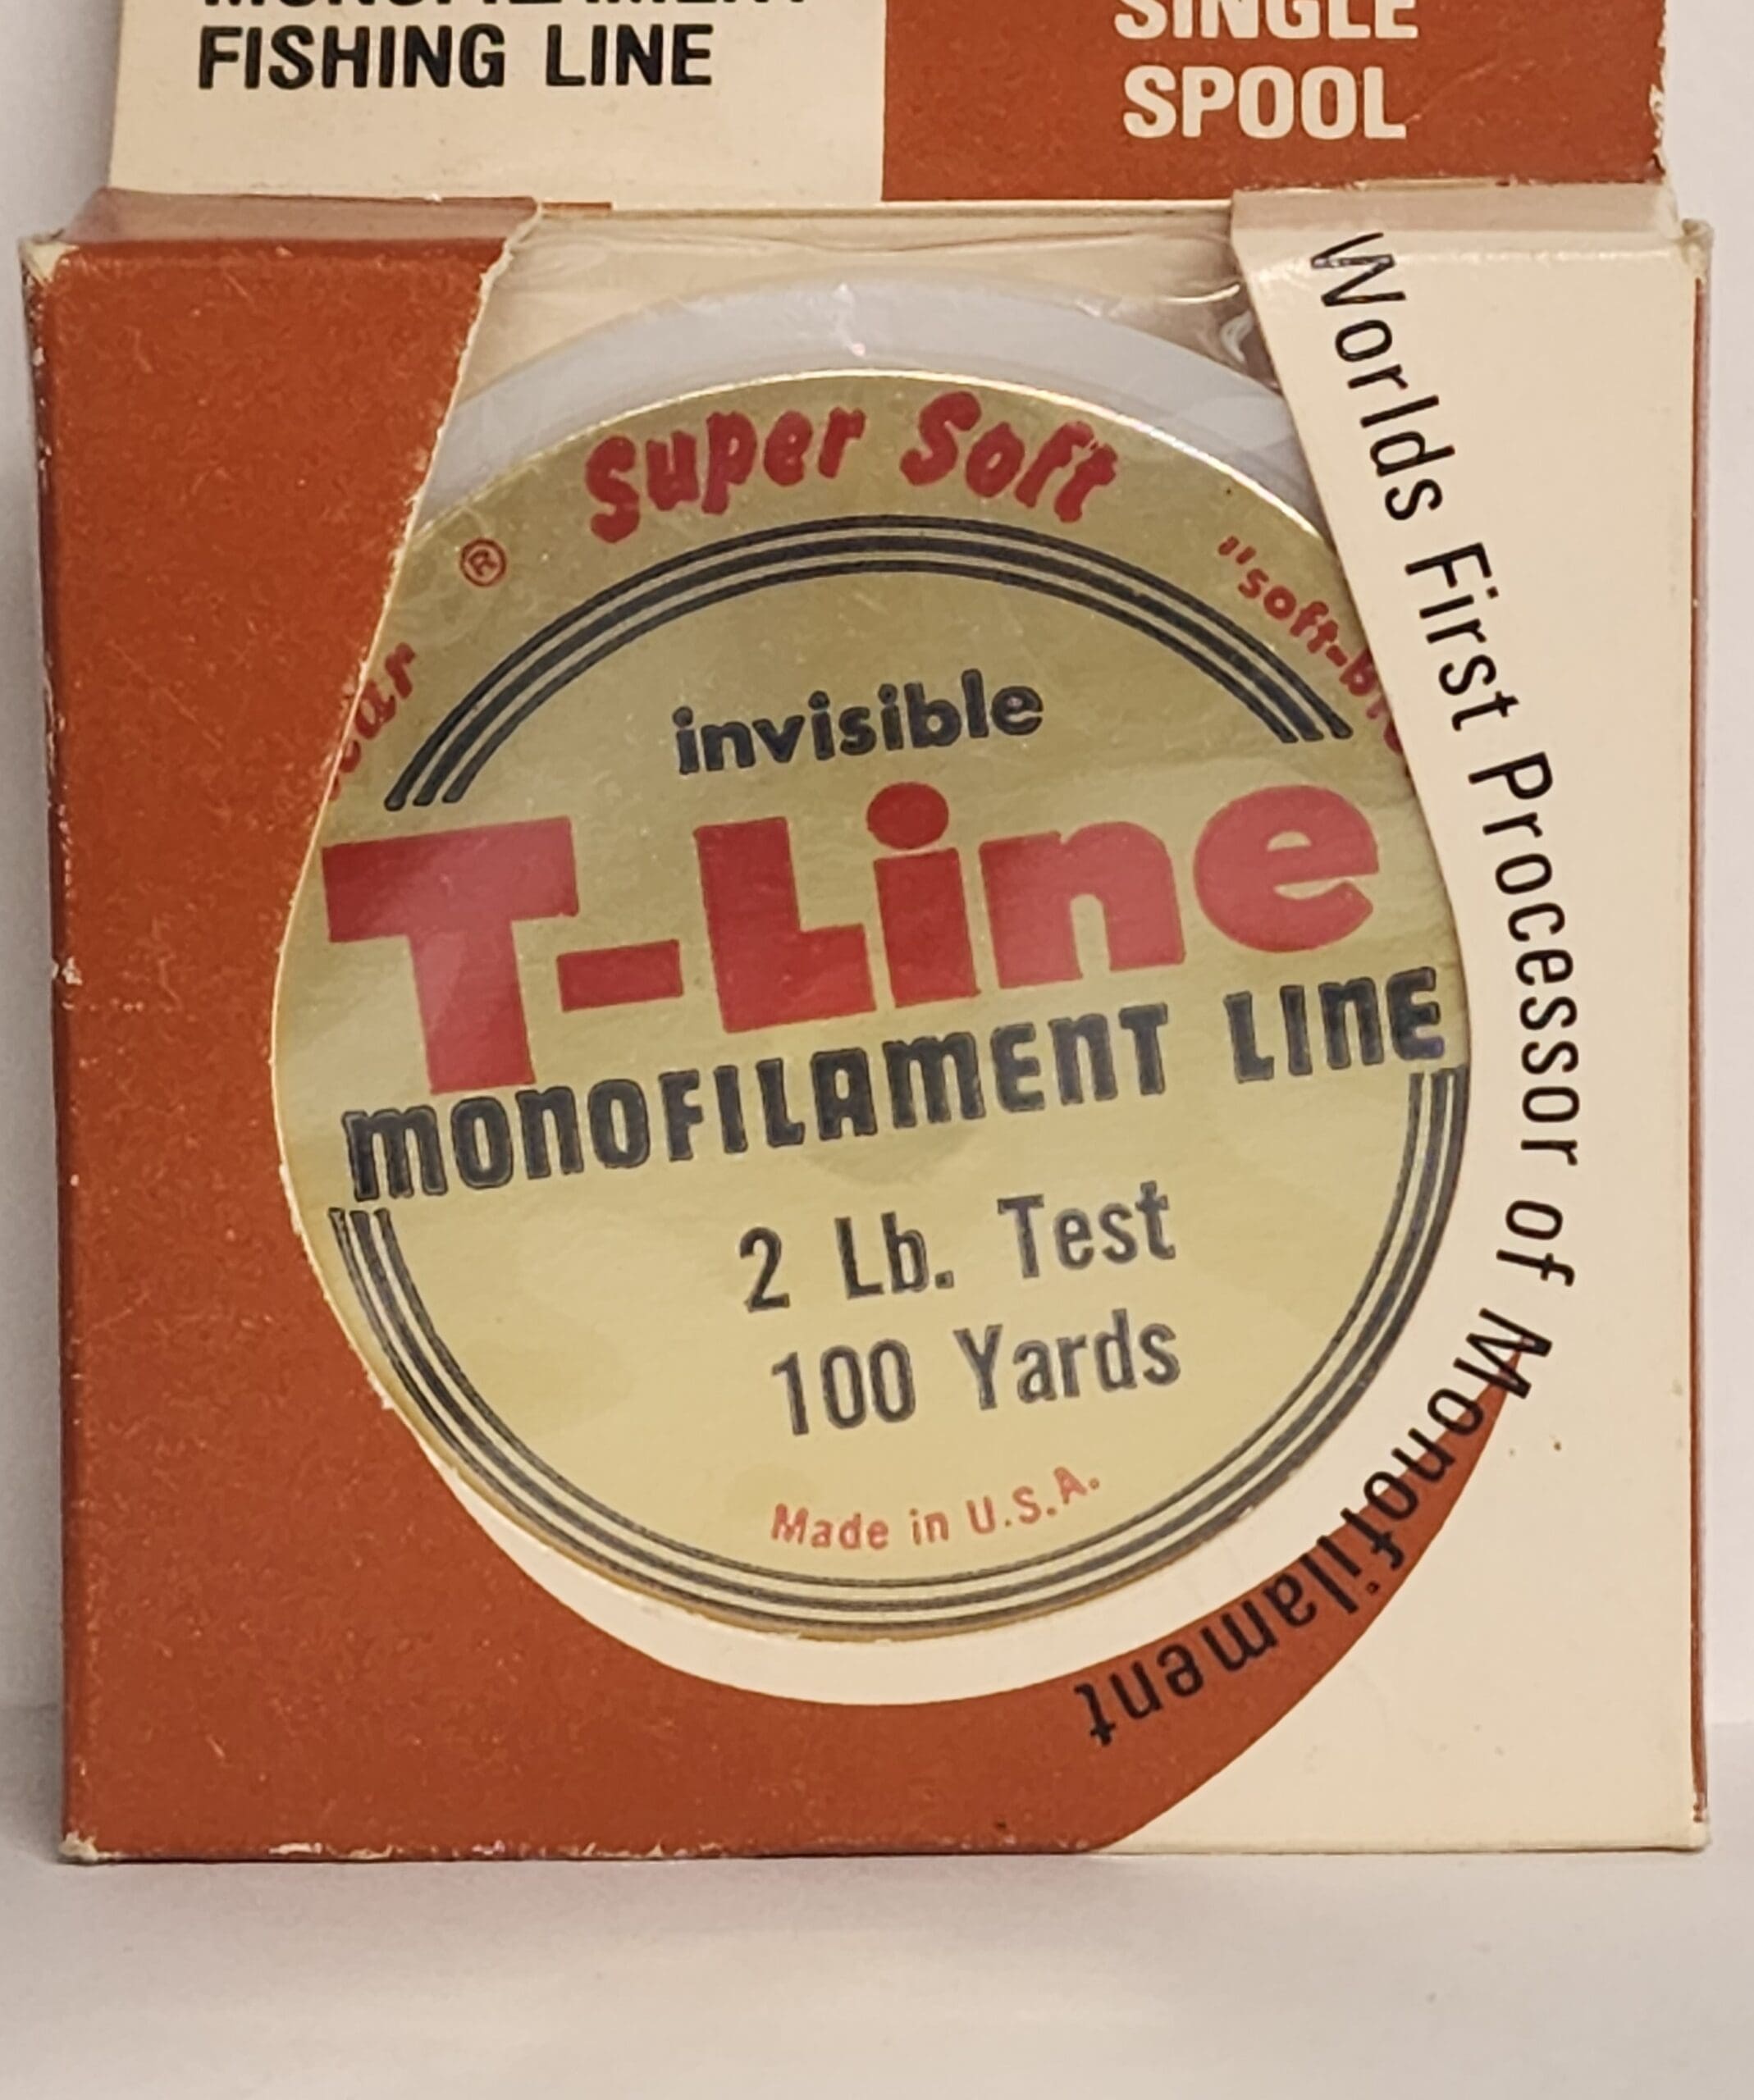 T-Line Monofilament Line 2 lb. Test 100 Yards